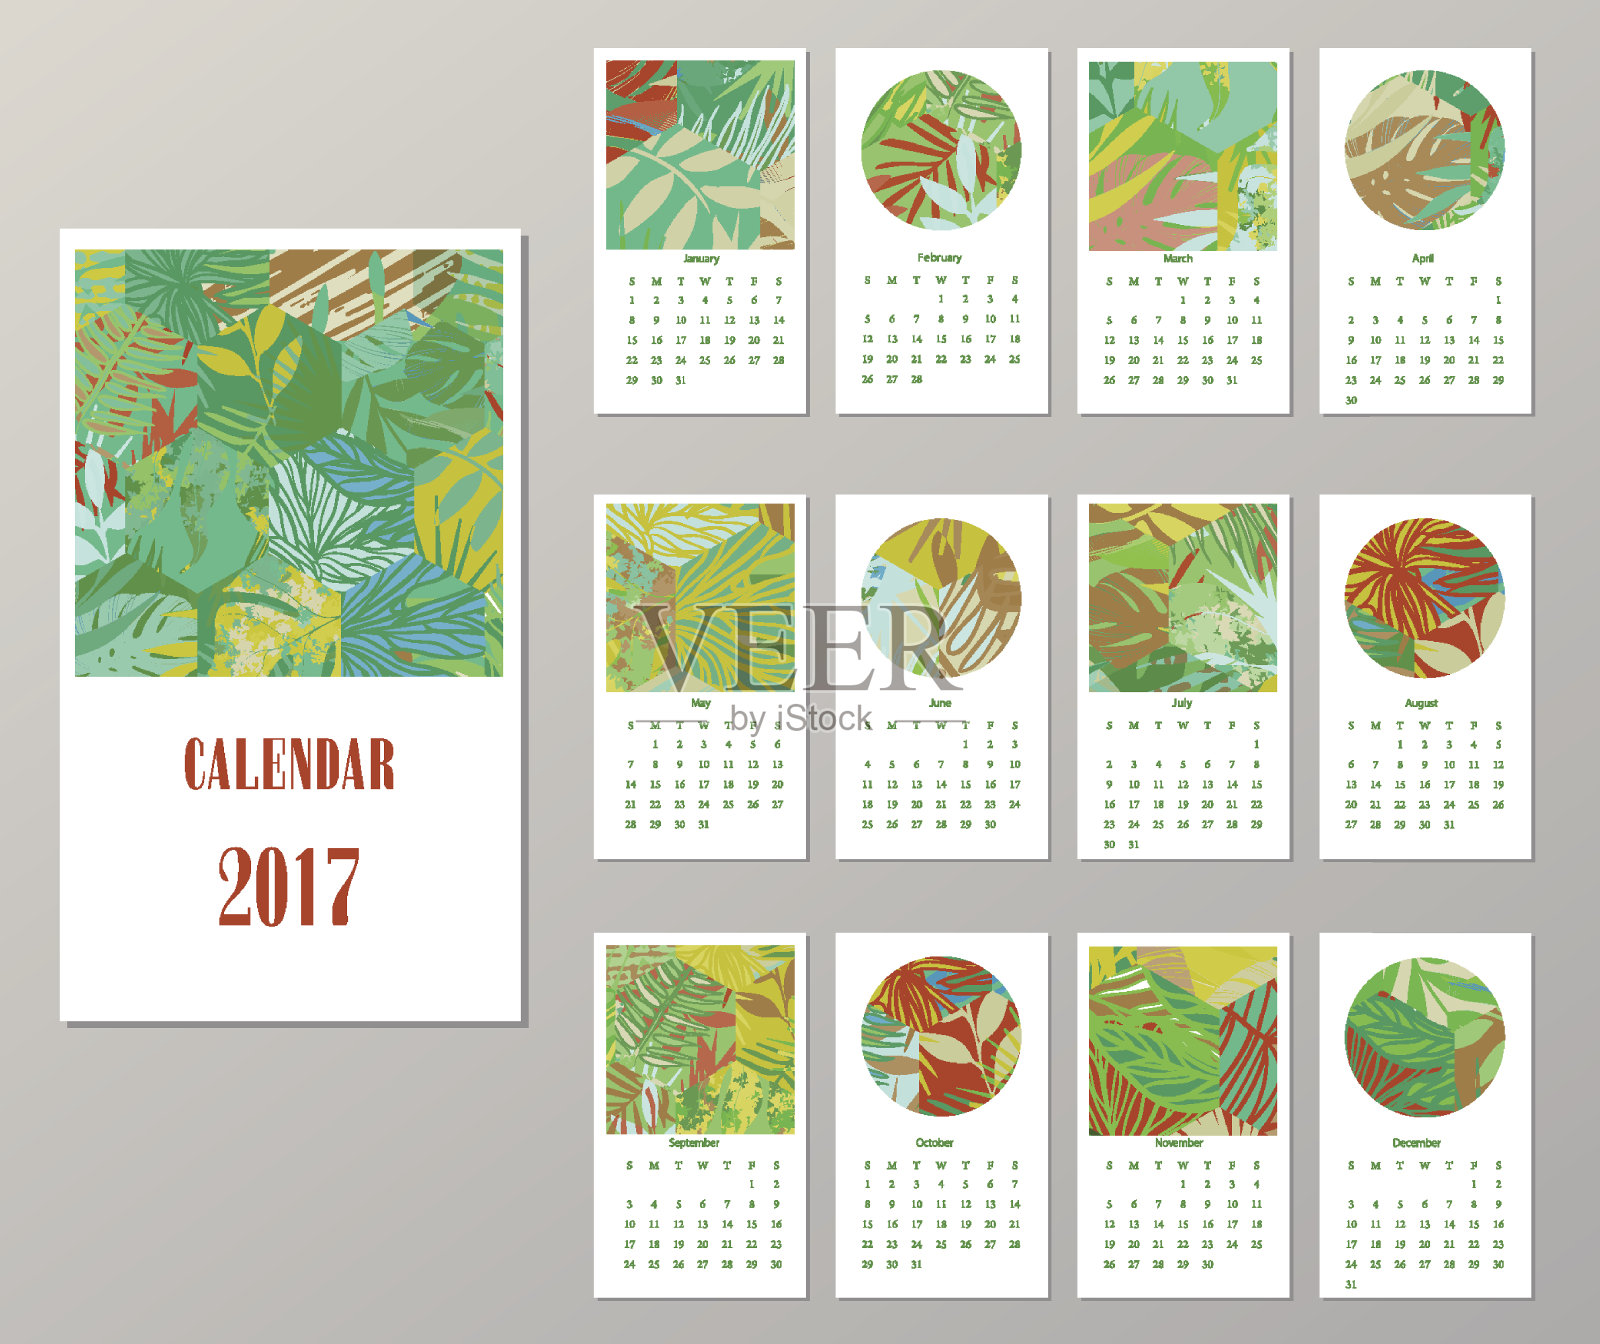 2017年日历。模板与创造性的热带纹理。设计模板素材